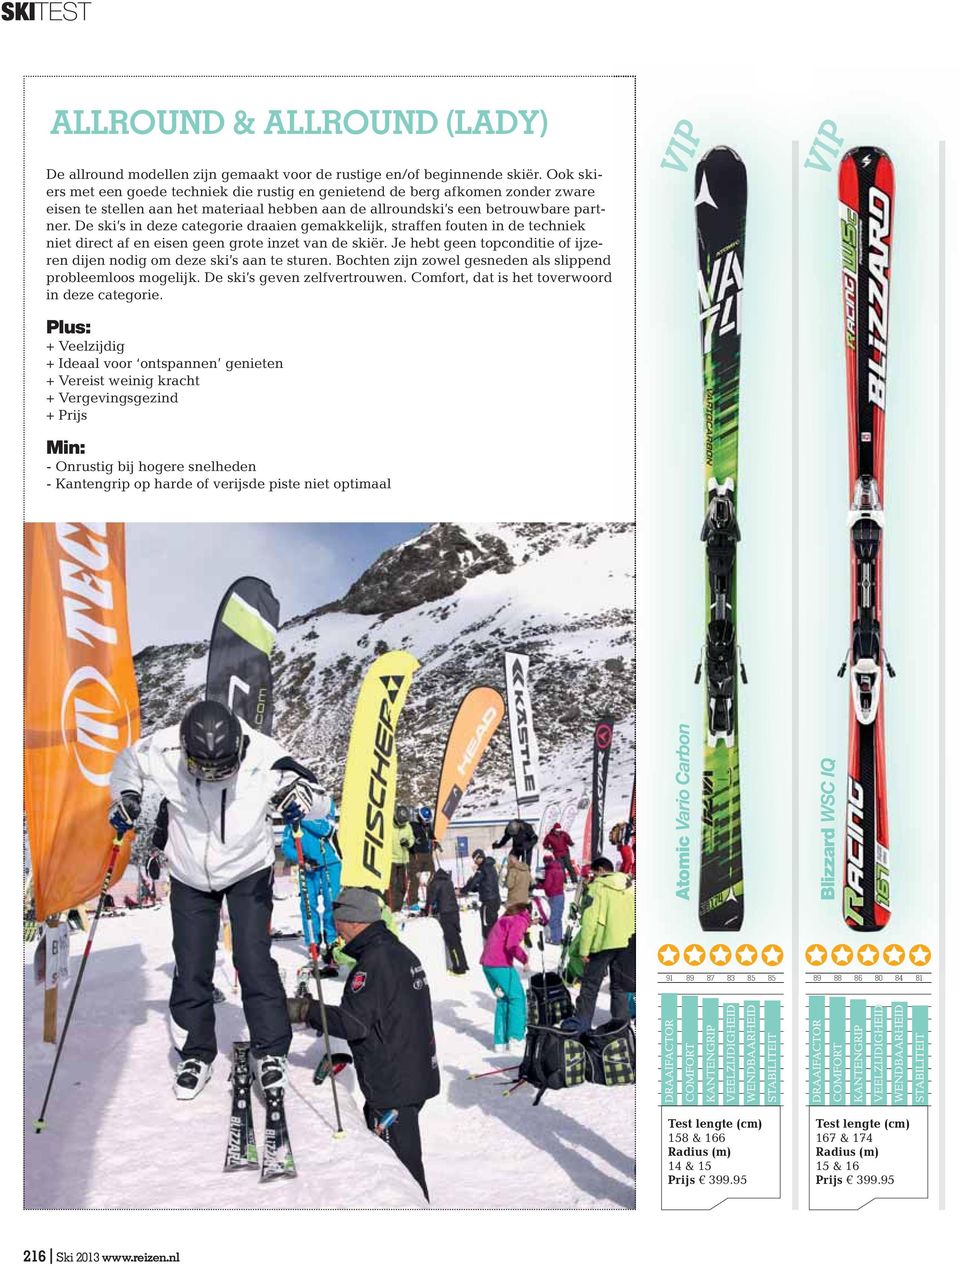 De ski s in deze categorie draaien gemakkelijk, straffen fouten in de techniek niet direct af en eisen geen grote inzet van de skiër.